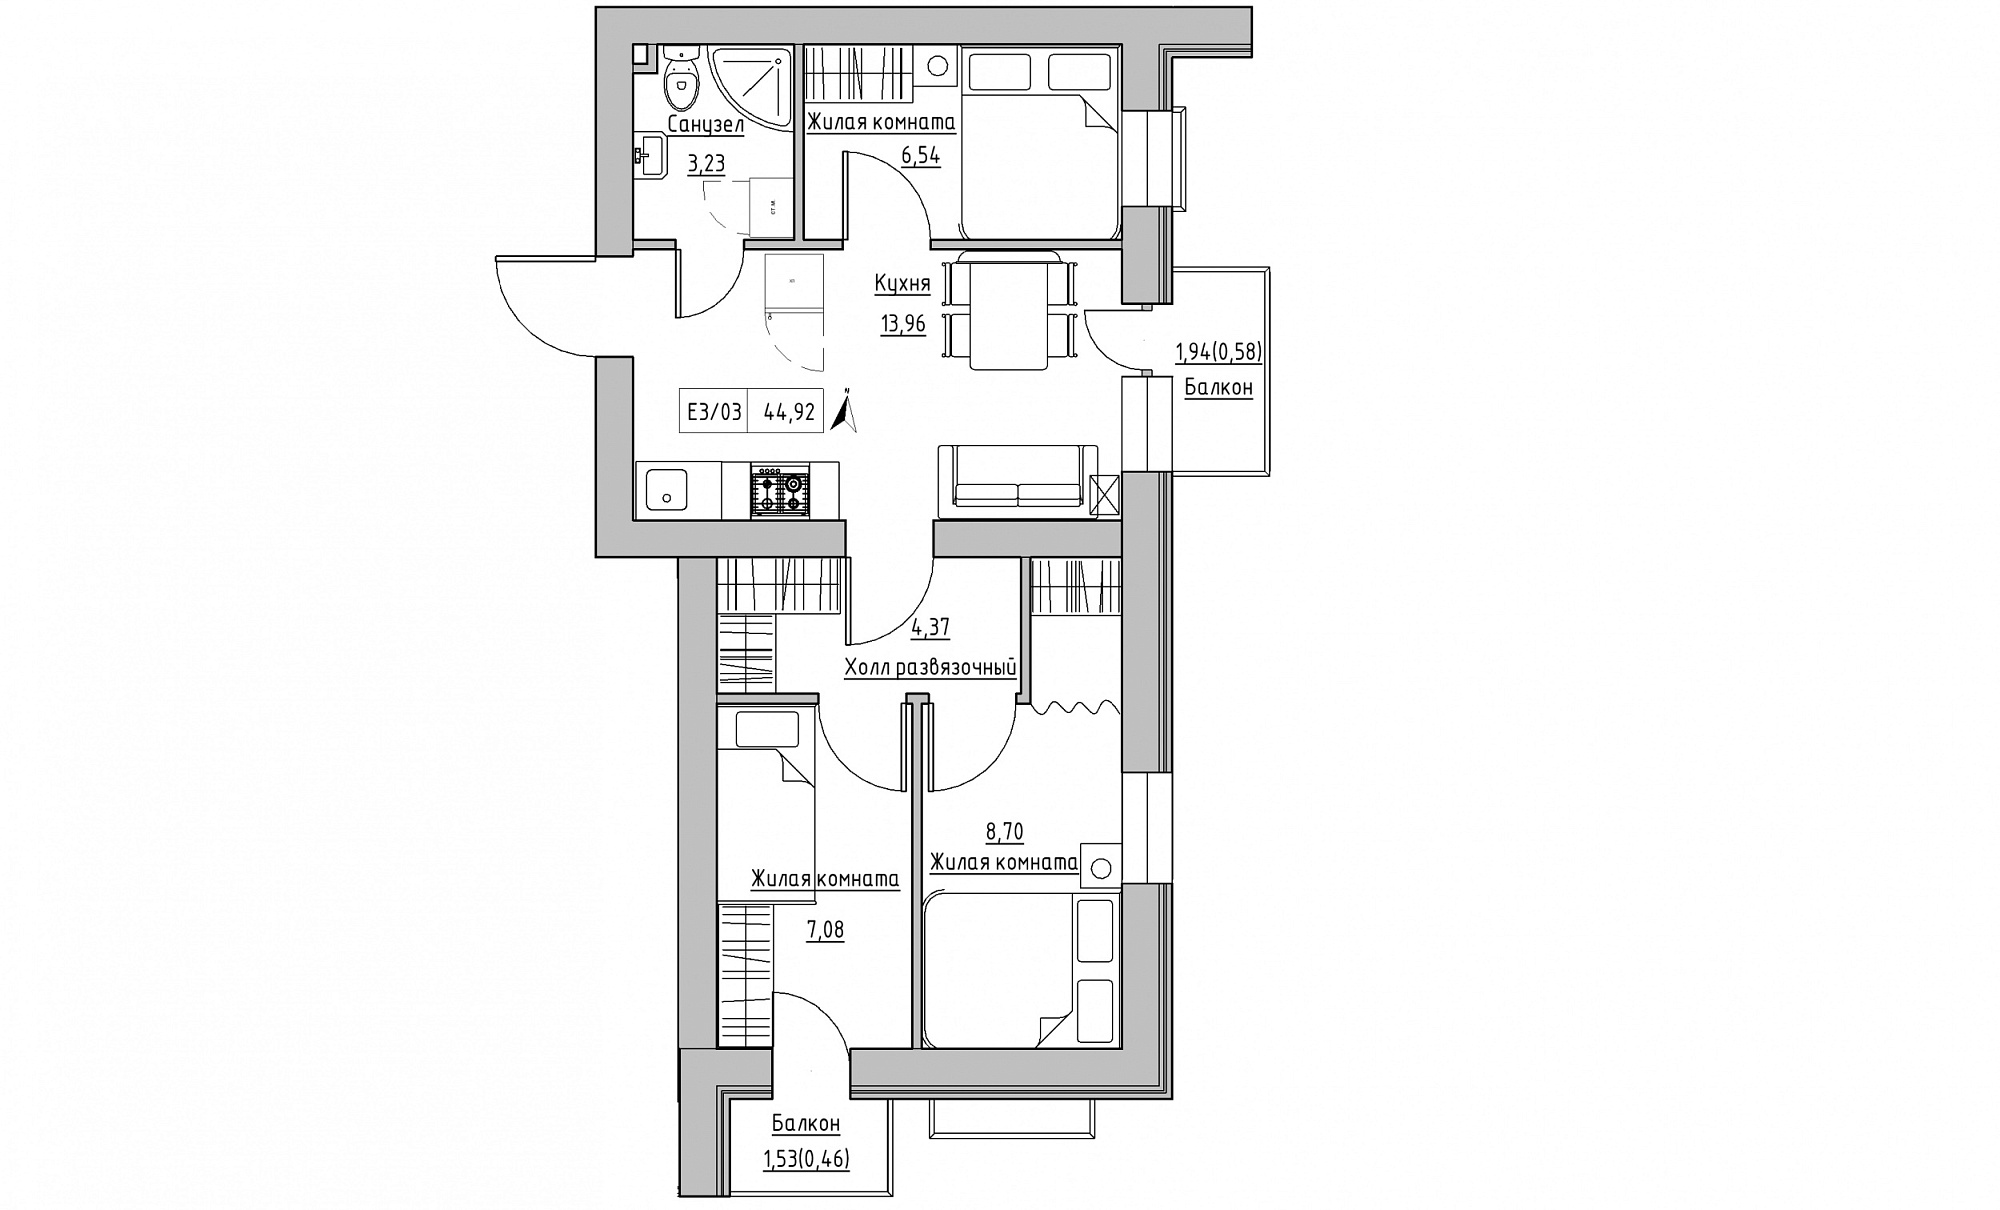 Планування 3-к квартира площею 44.92м2, KS-015-05/0008.